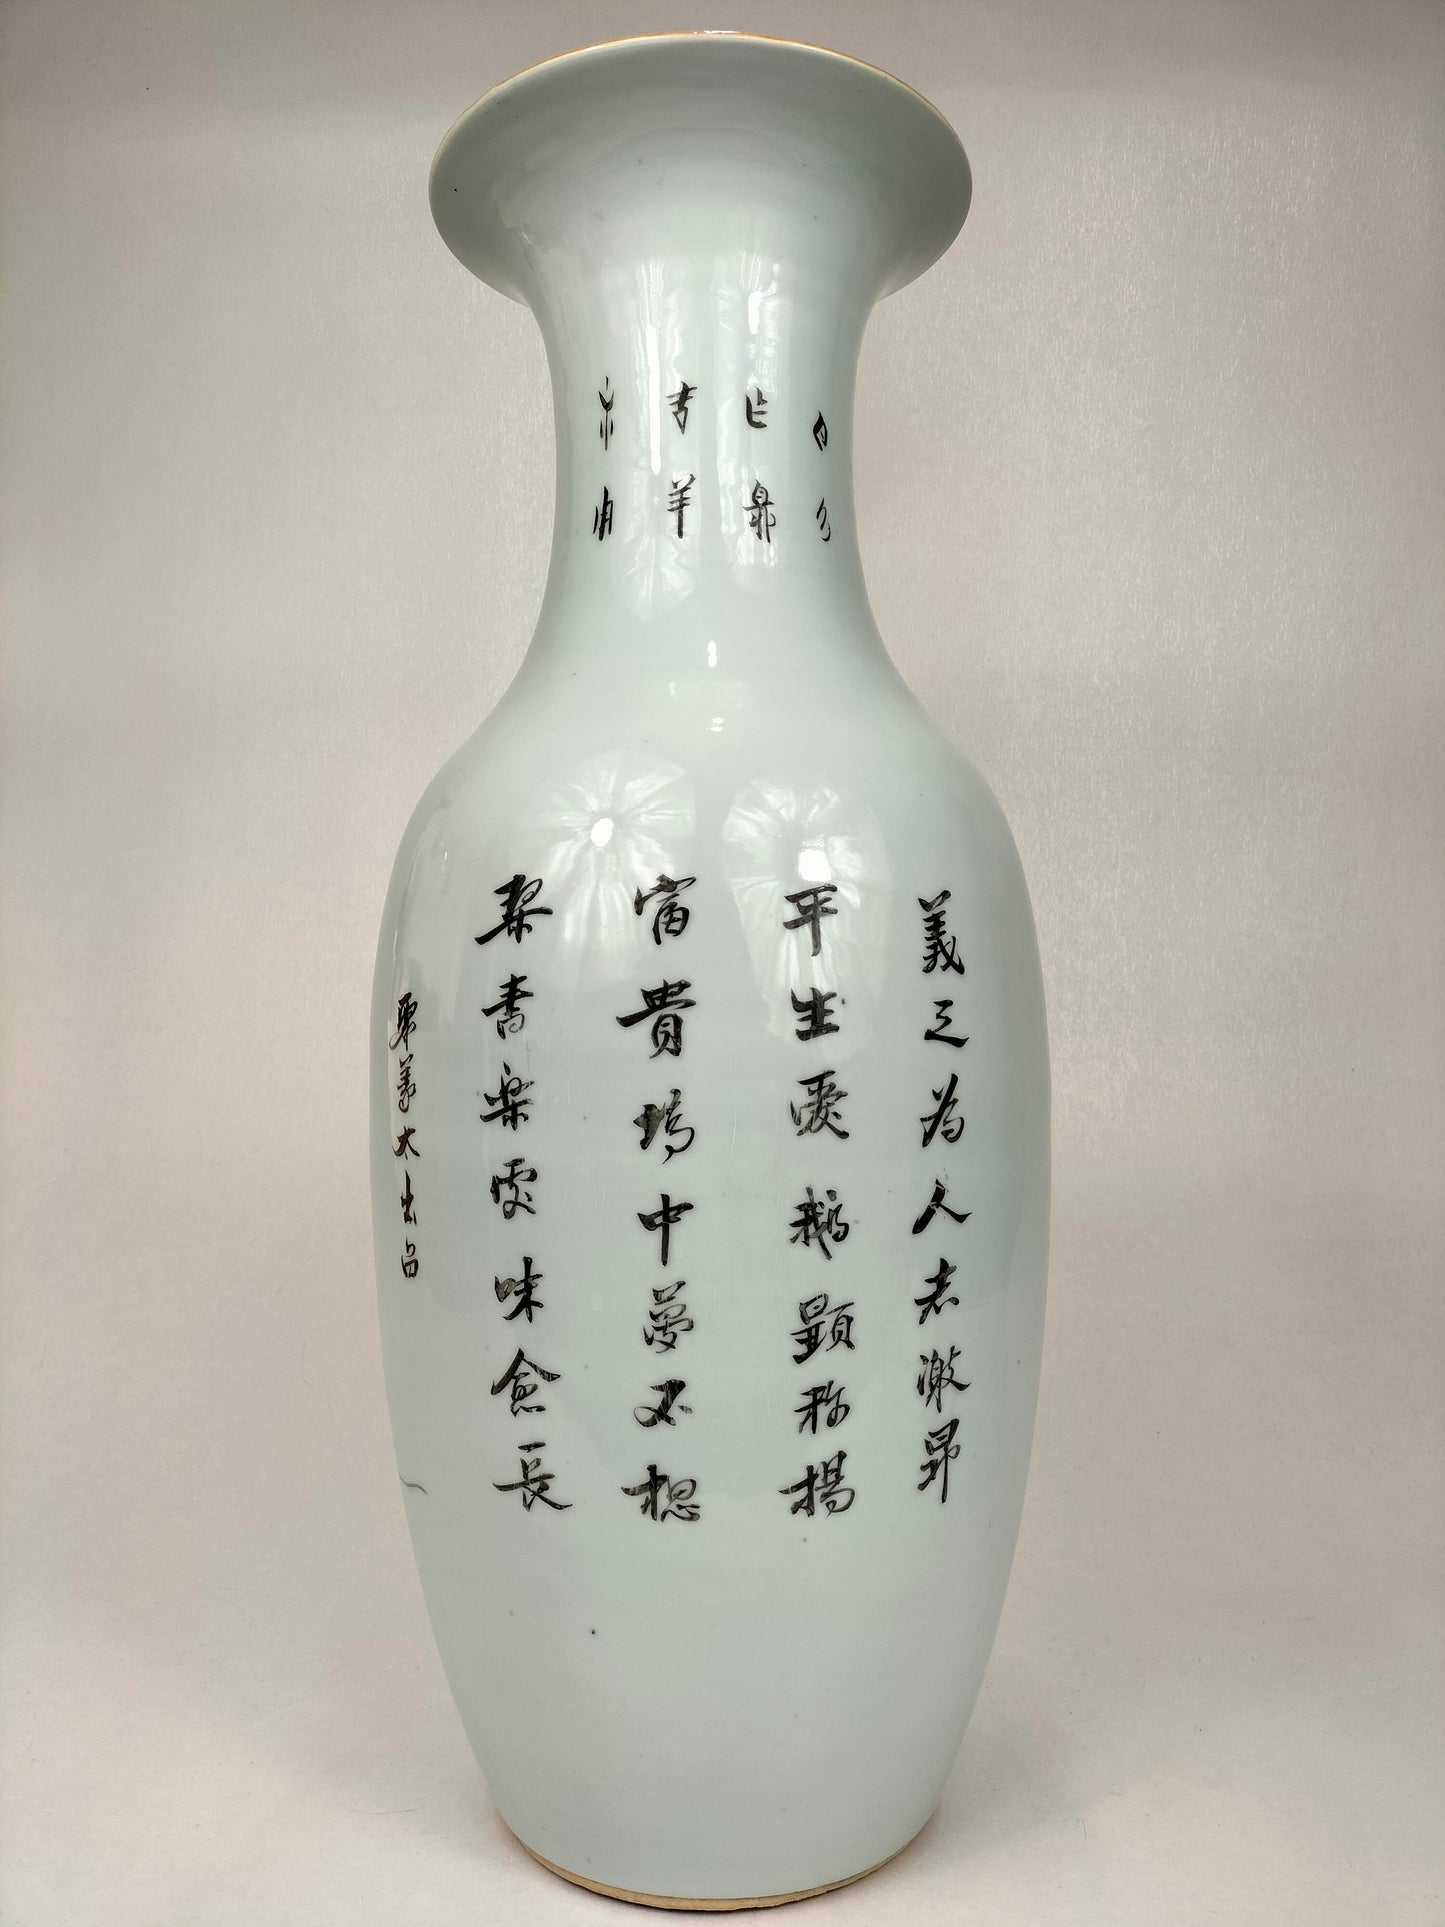 大型古董中国花瓶，装饰有圣人和儿童//民国时期（1912-1949）